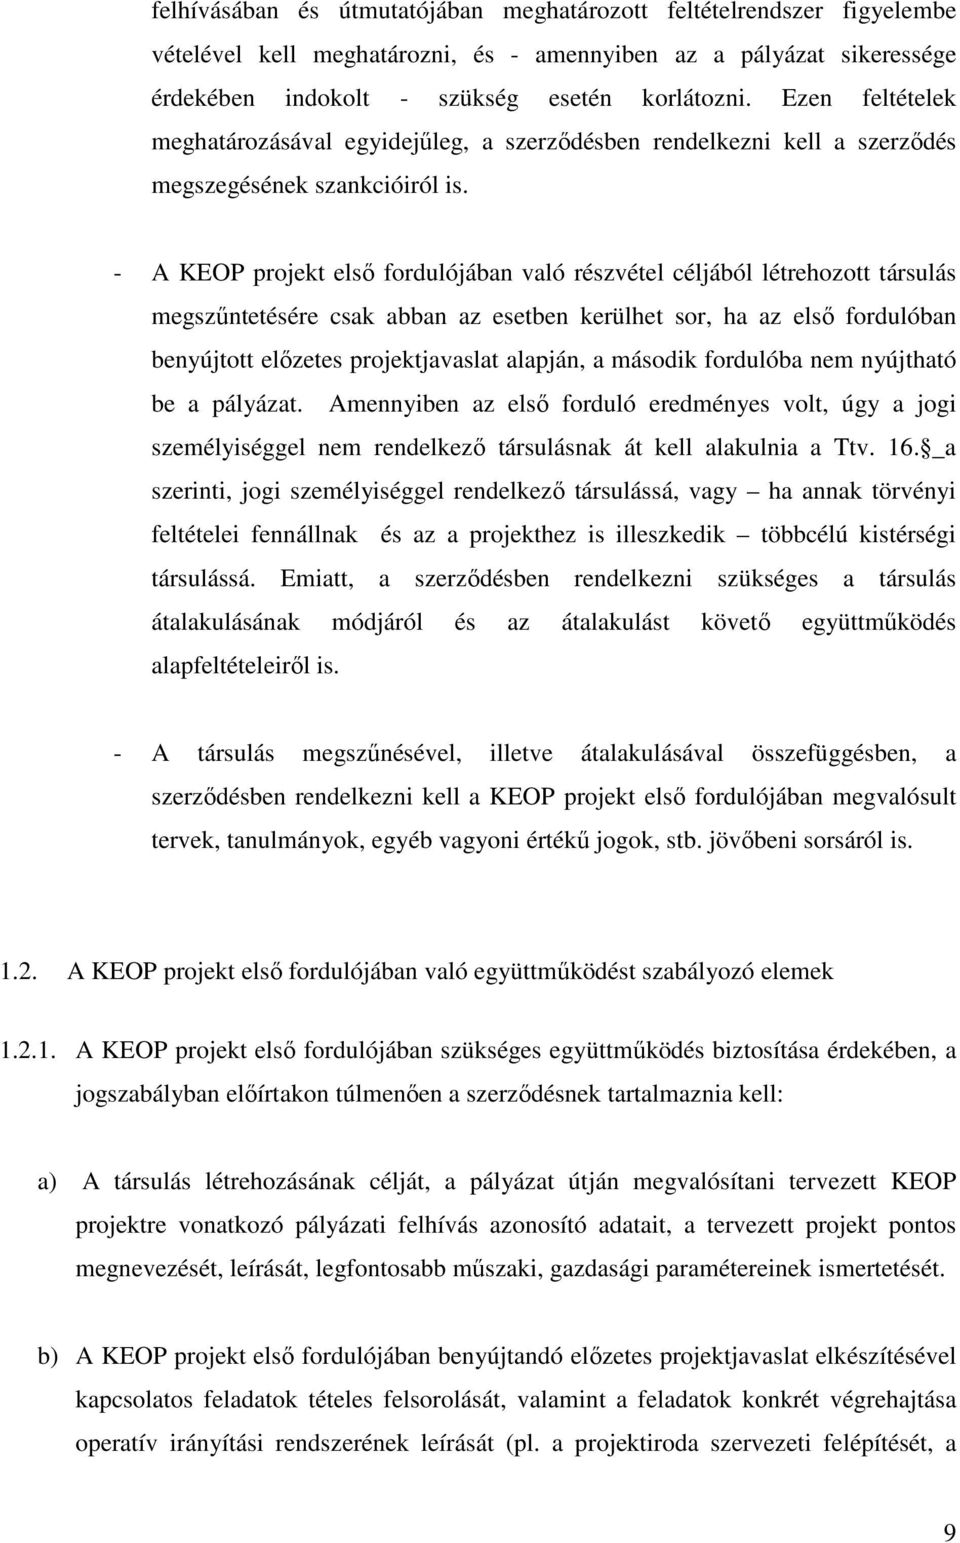 - A KEOP projekt elsı fordulójában való részvétel céljából létrehozott társulás megszőntetésére csak abban az esetben kerülhet sor, ha az elsı fordulóban benyújtott elızetes projektjavaslat alapján,